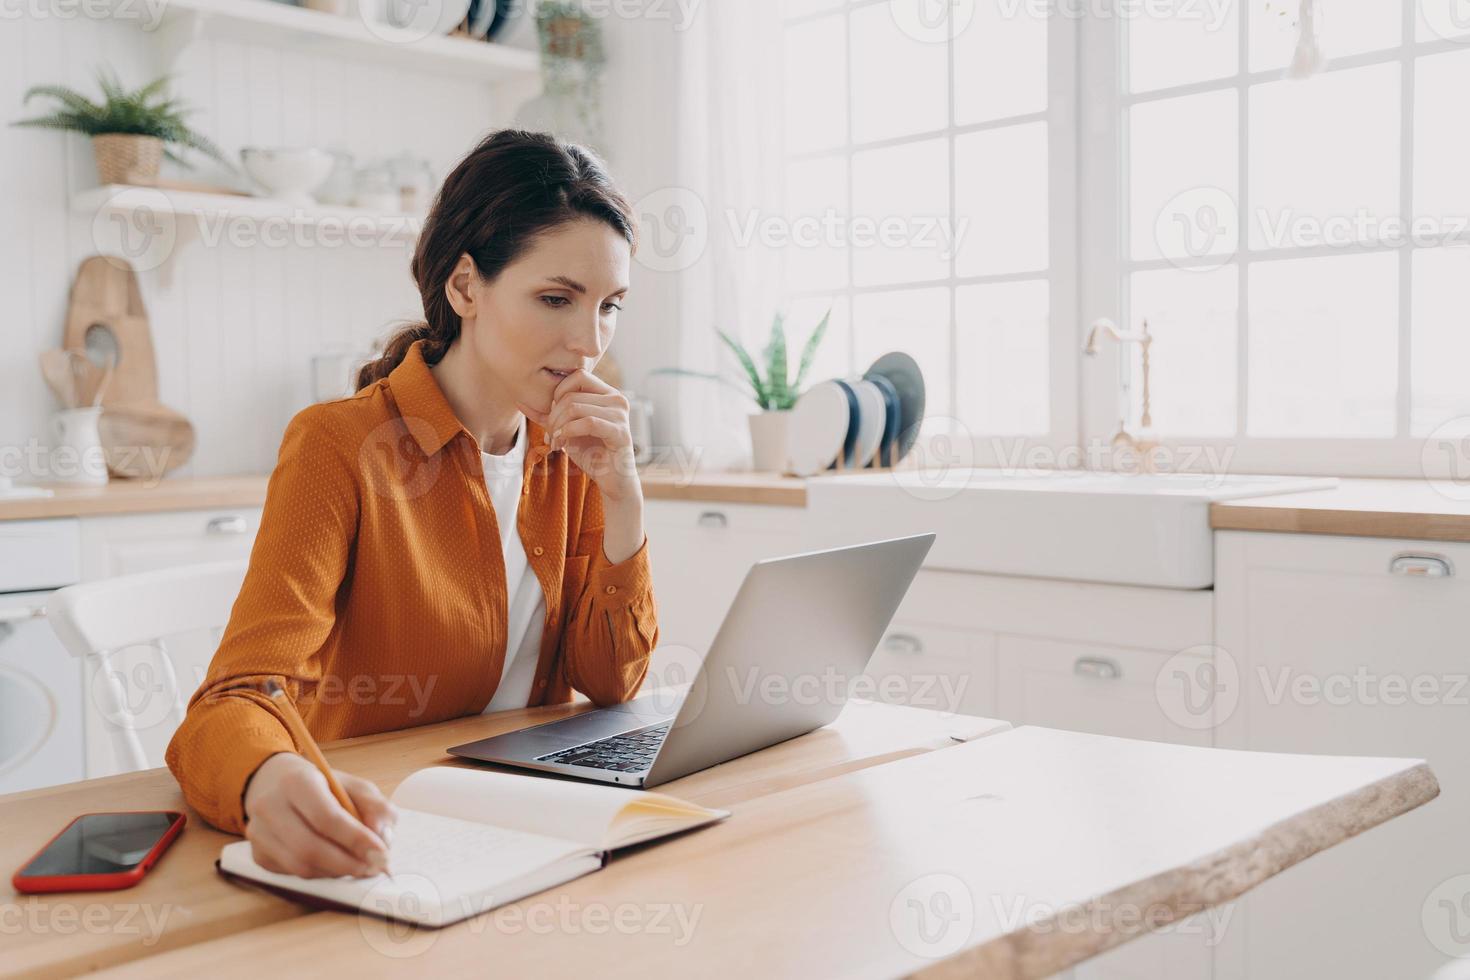 une femme au foyer indépendante travaille sur un ordinateur portable, planifie des achats, prend des notes, est assise dans la cuisine à la maison photo